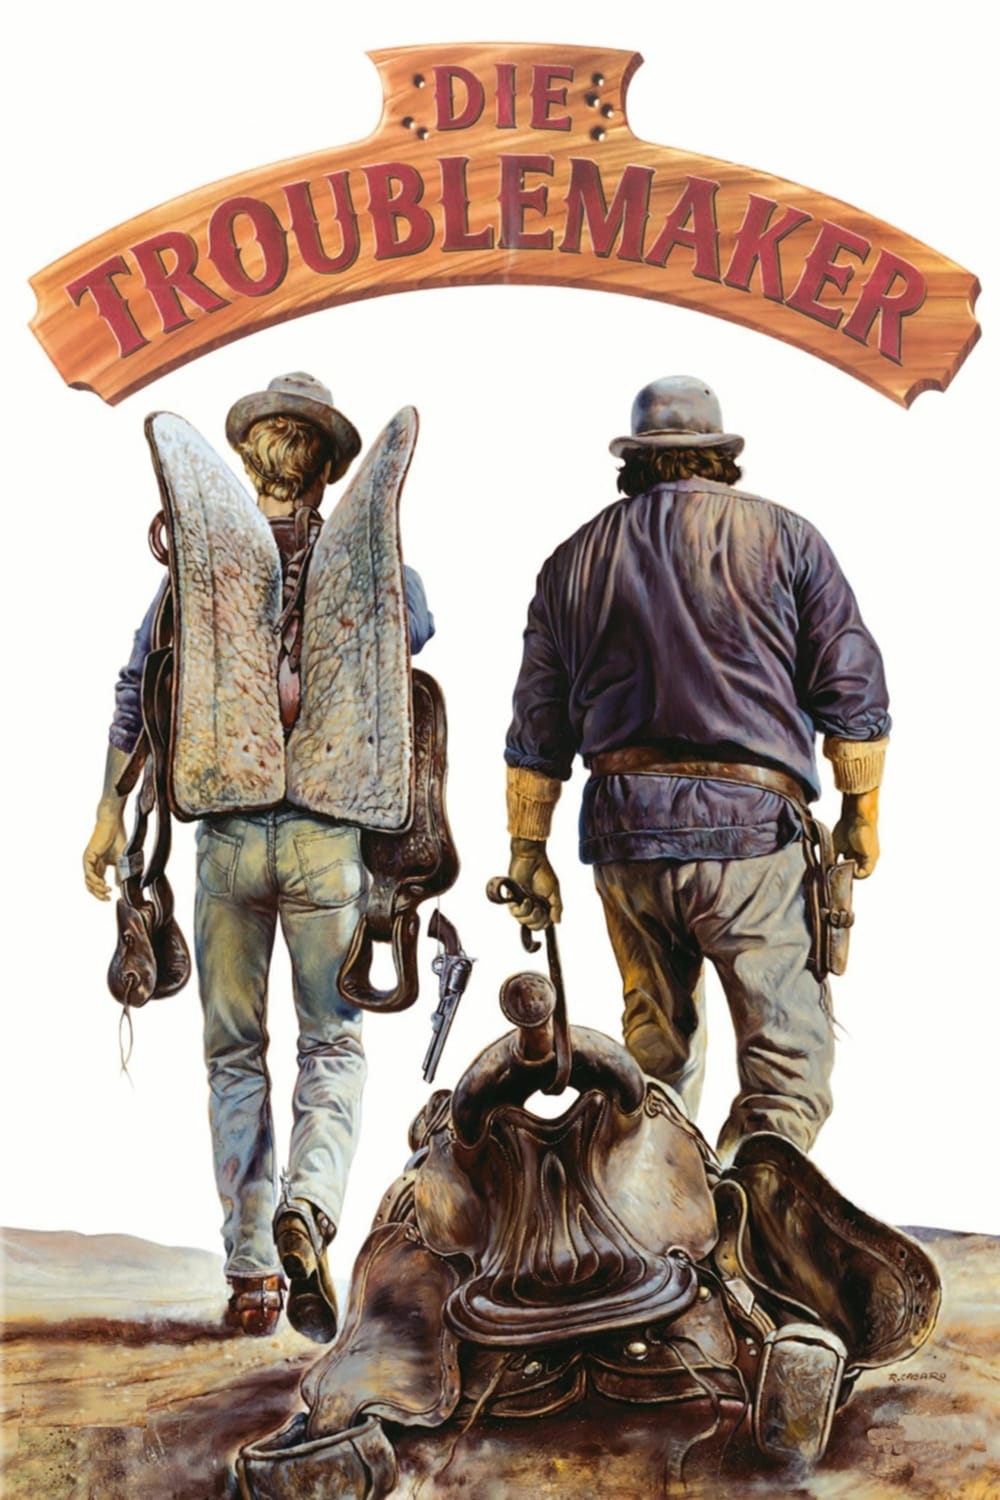 Plakat von "Die Troublemaker"